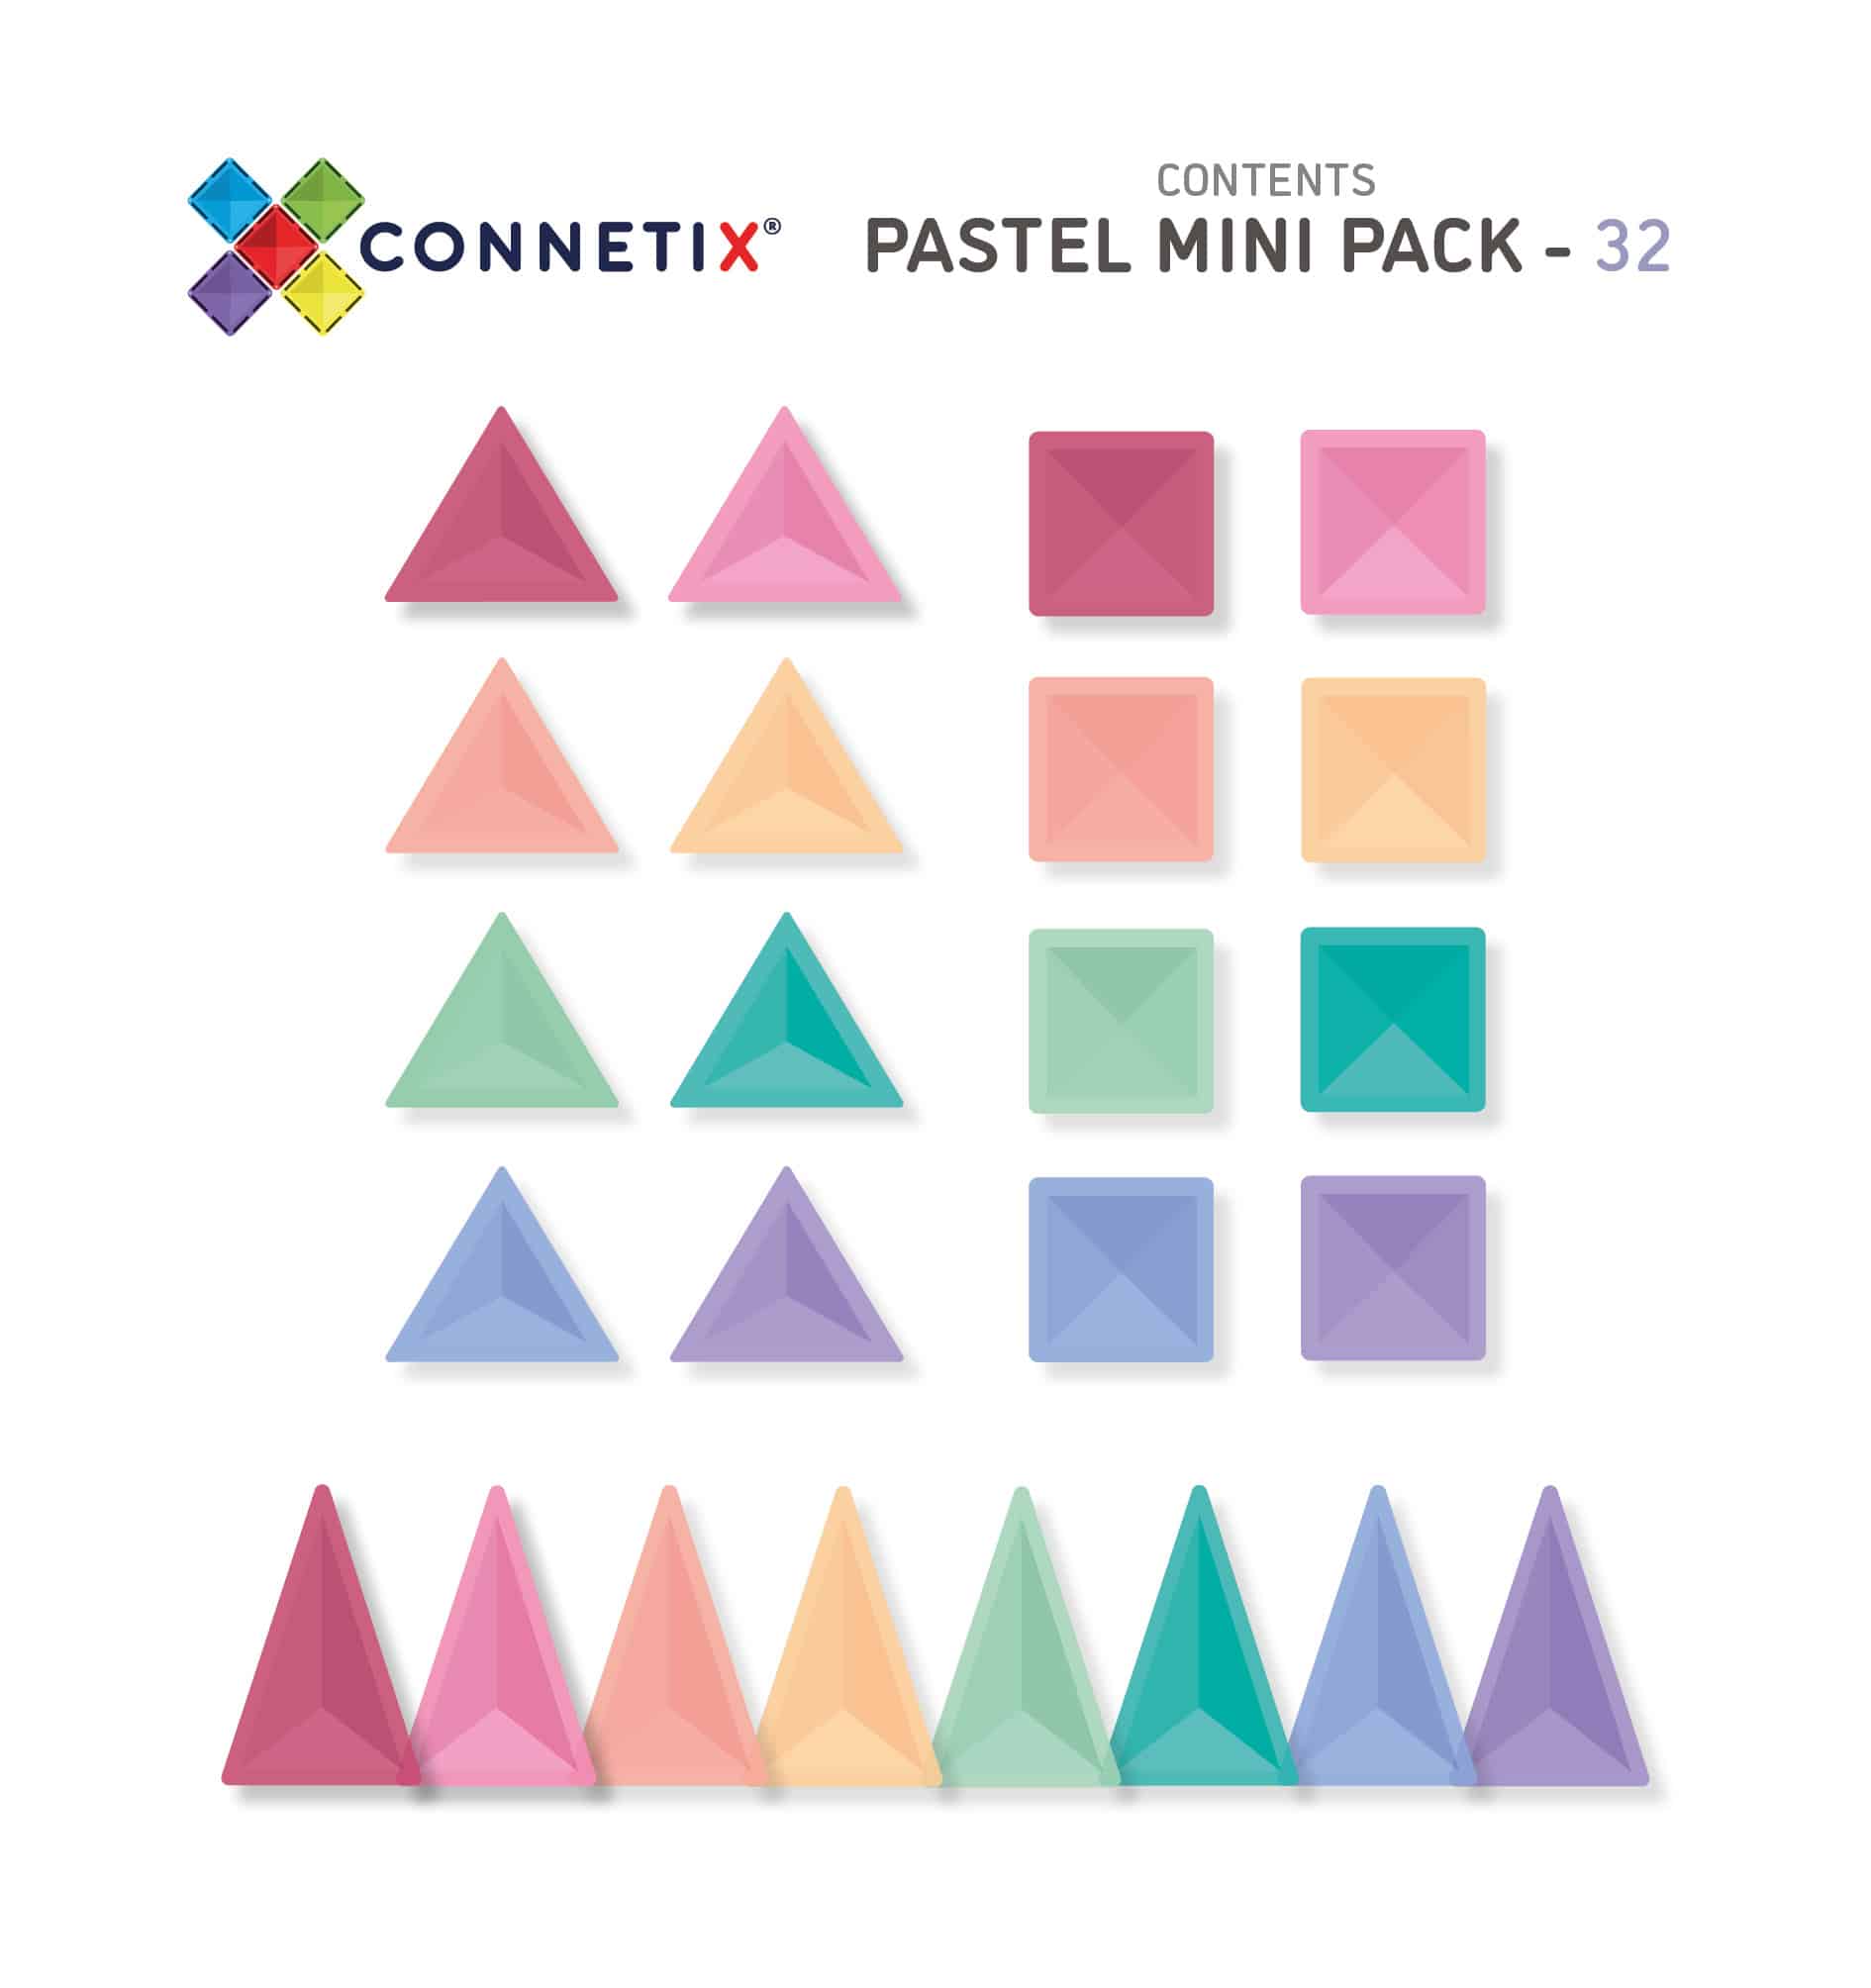 32-Pastel-Mini-Pack-Contents